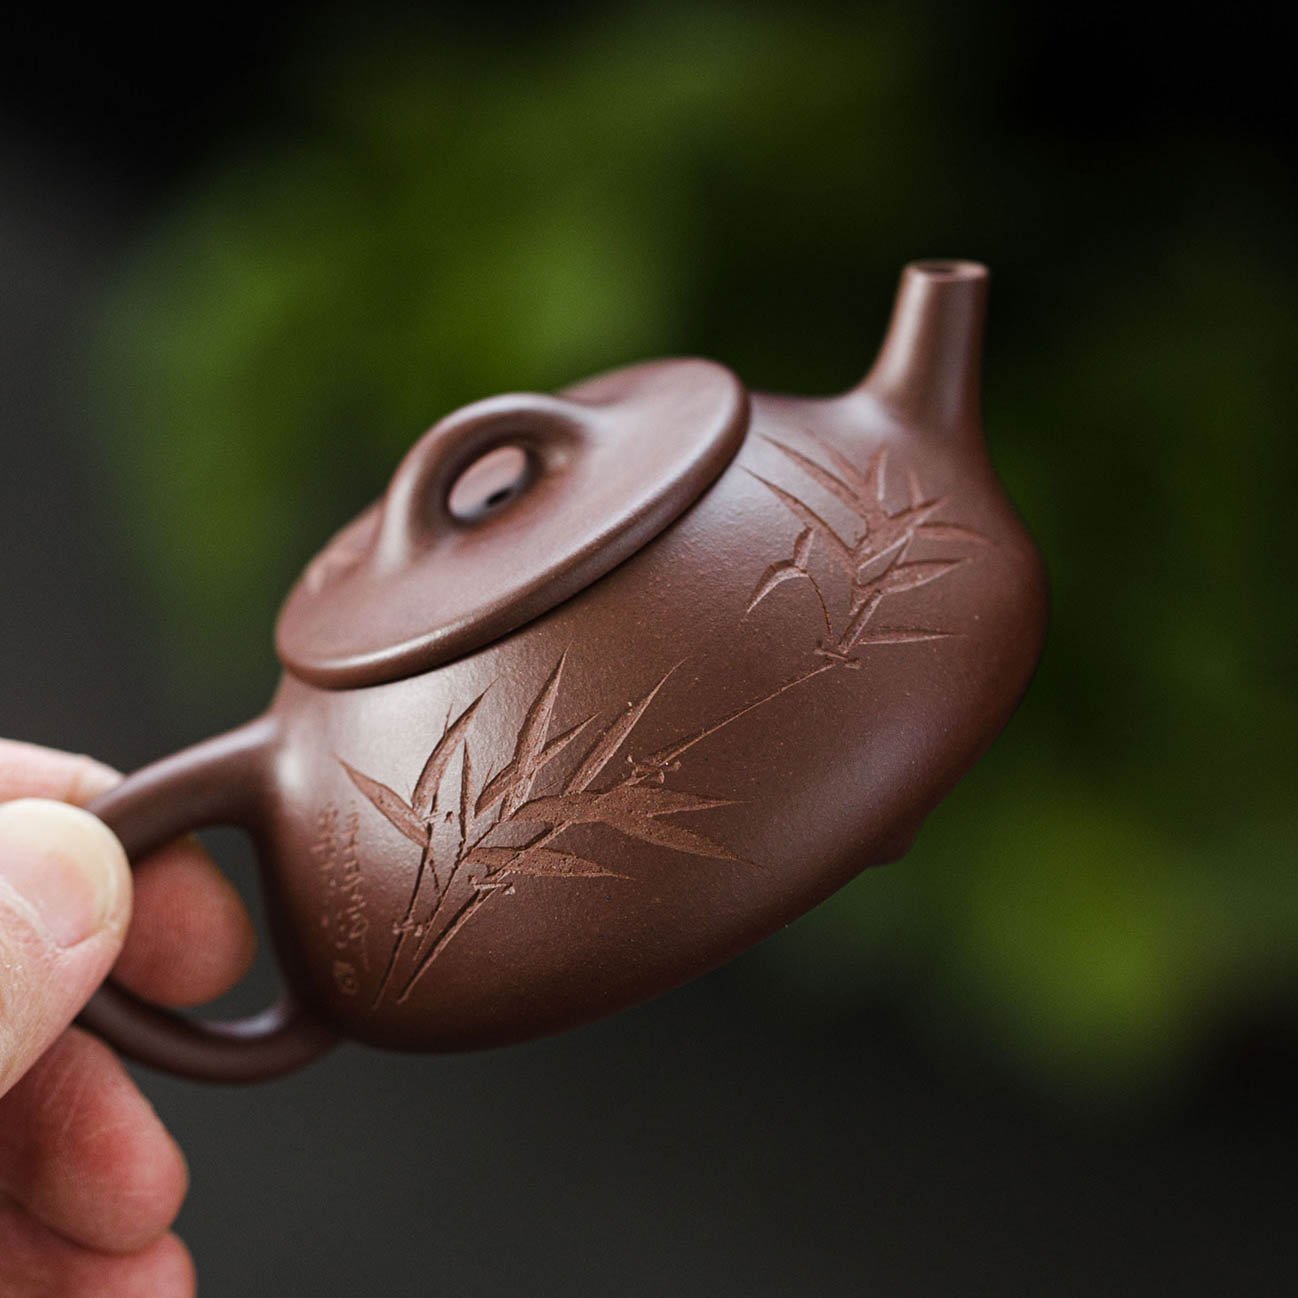 Shi Piao Yixing Teapot 120ML